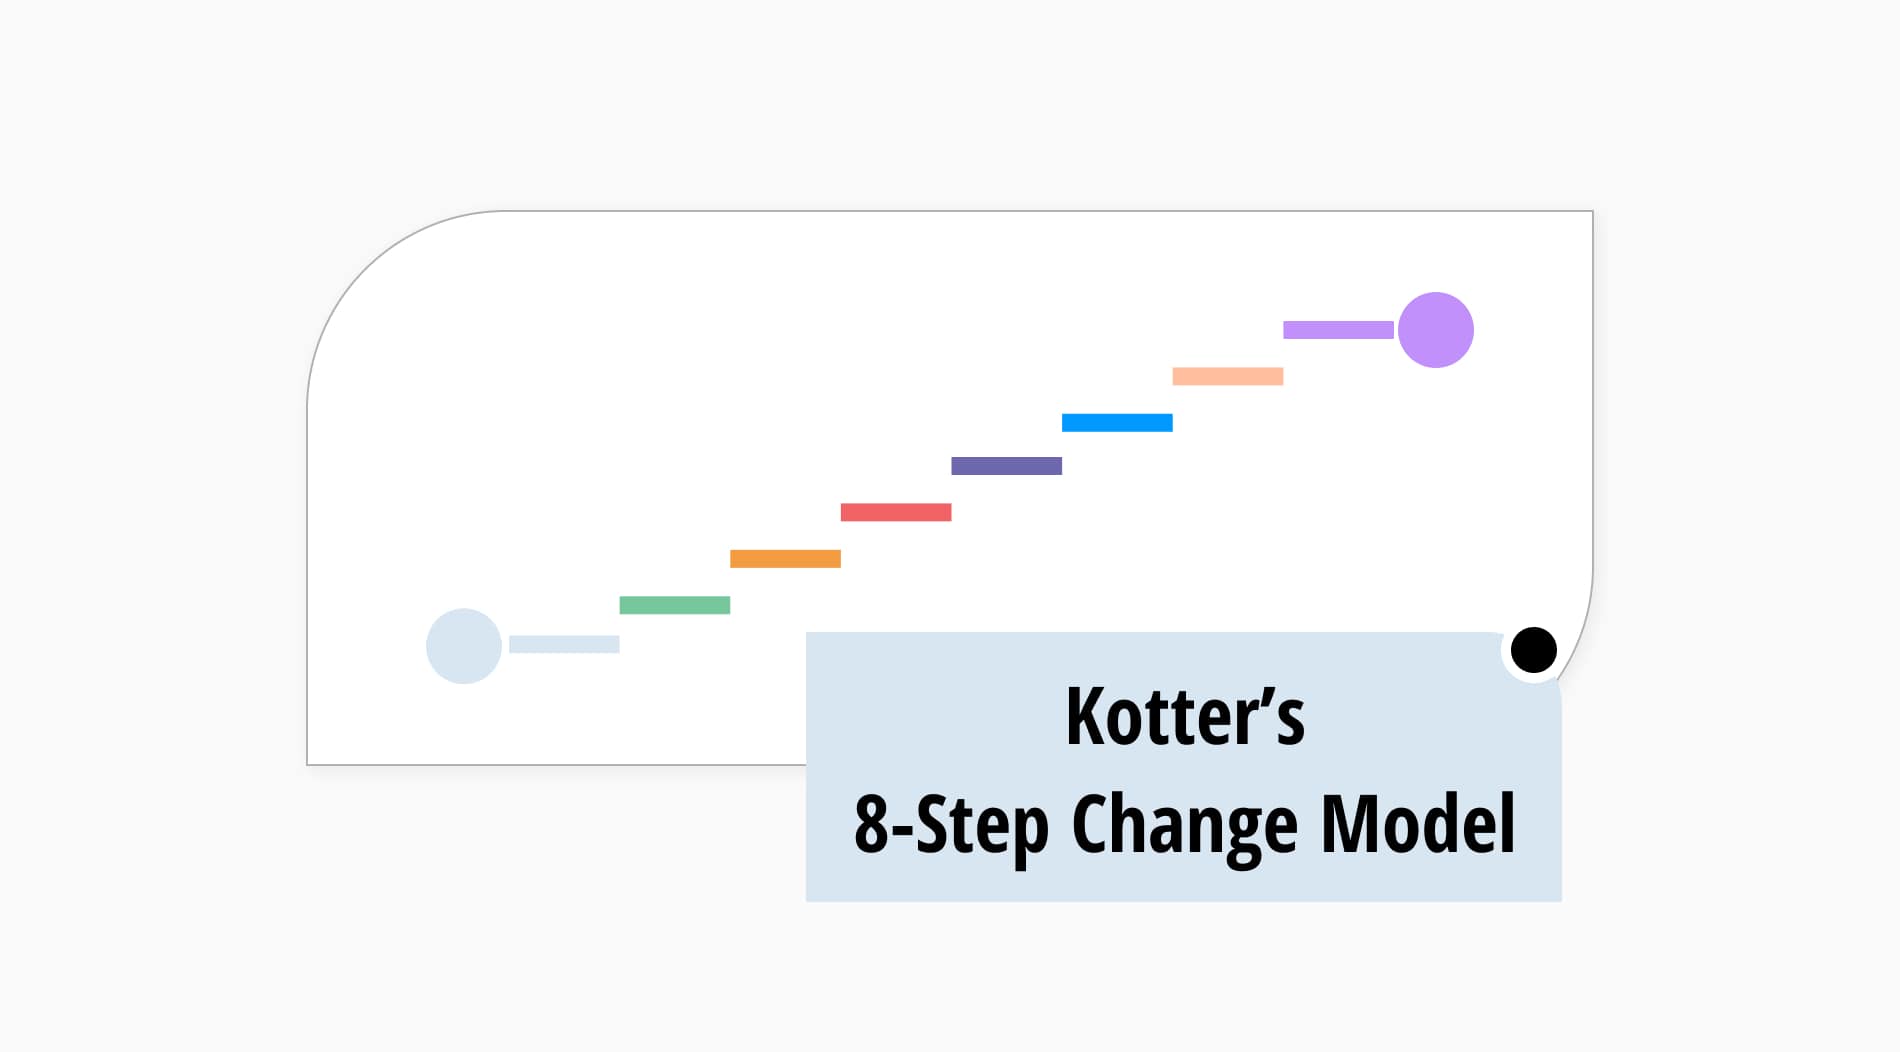 A full guide of Kotter’s 8-step change model